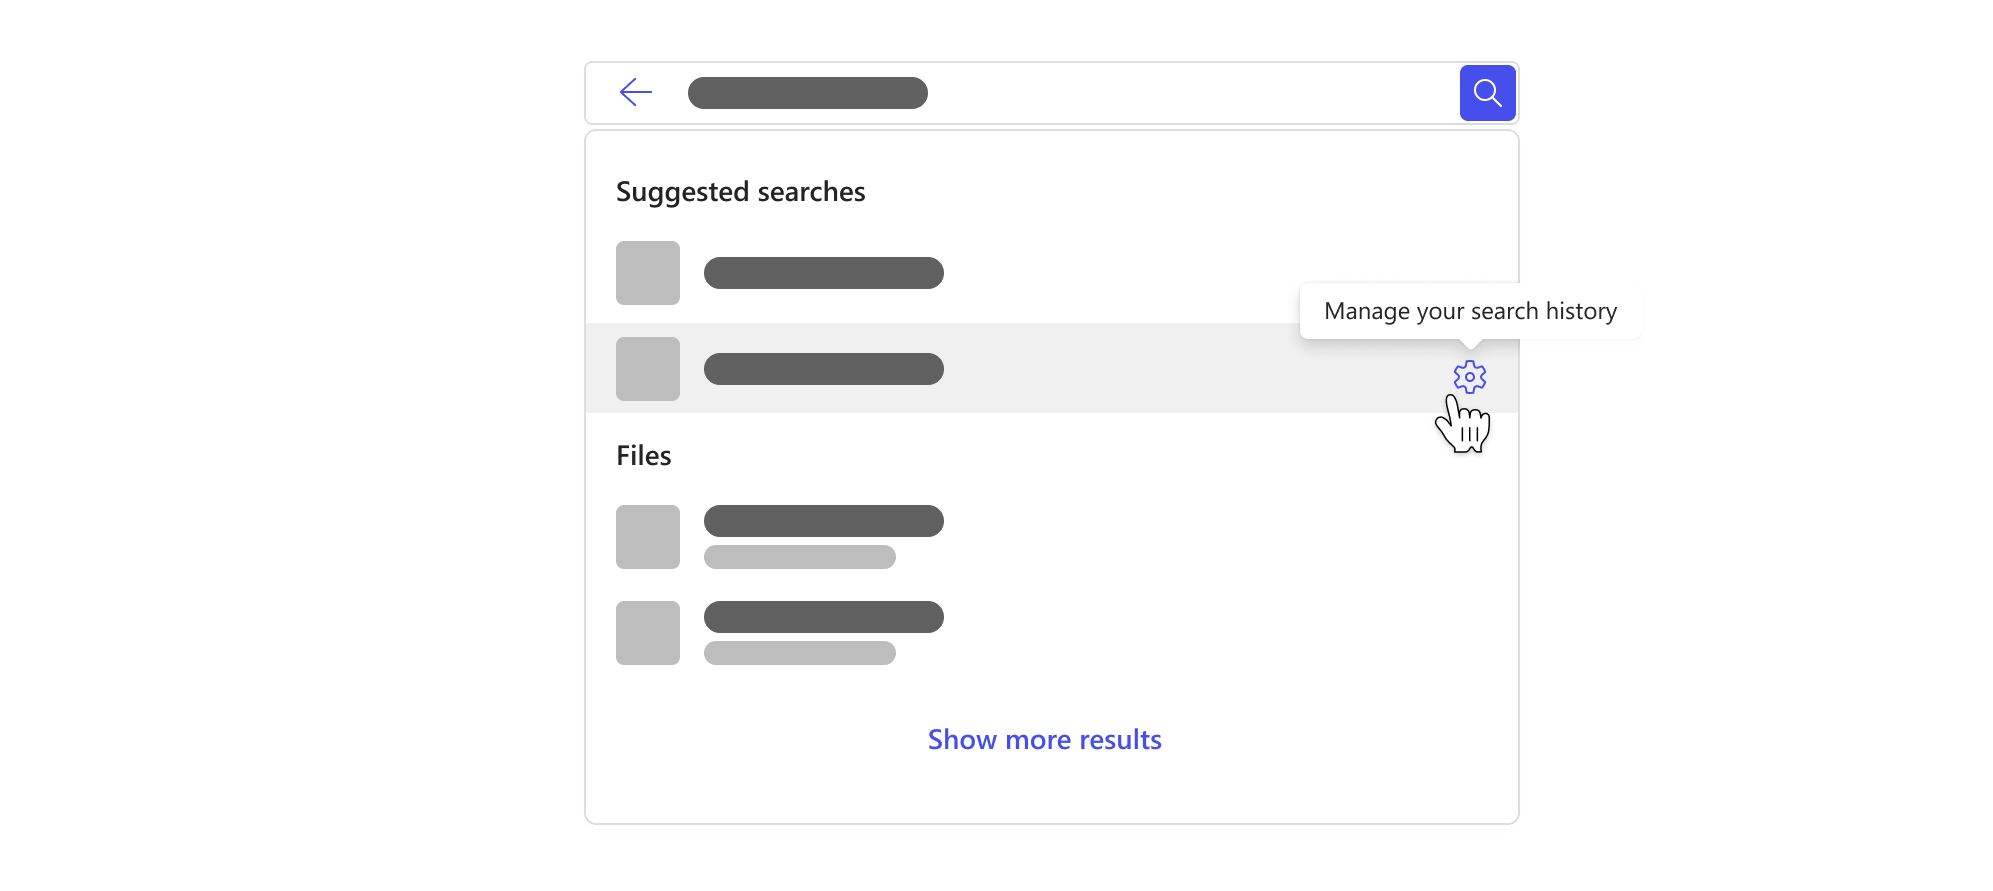 Поле за търсене с падащо меню, което акцентира върху предложените търсения въз основа на вашата хронология на търсене и бутон за управление на хронологията на търсенето.